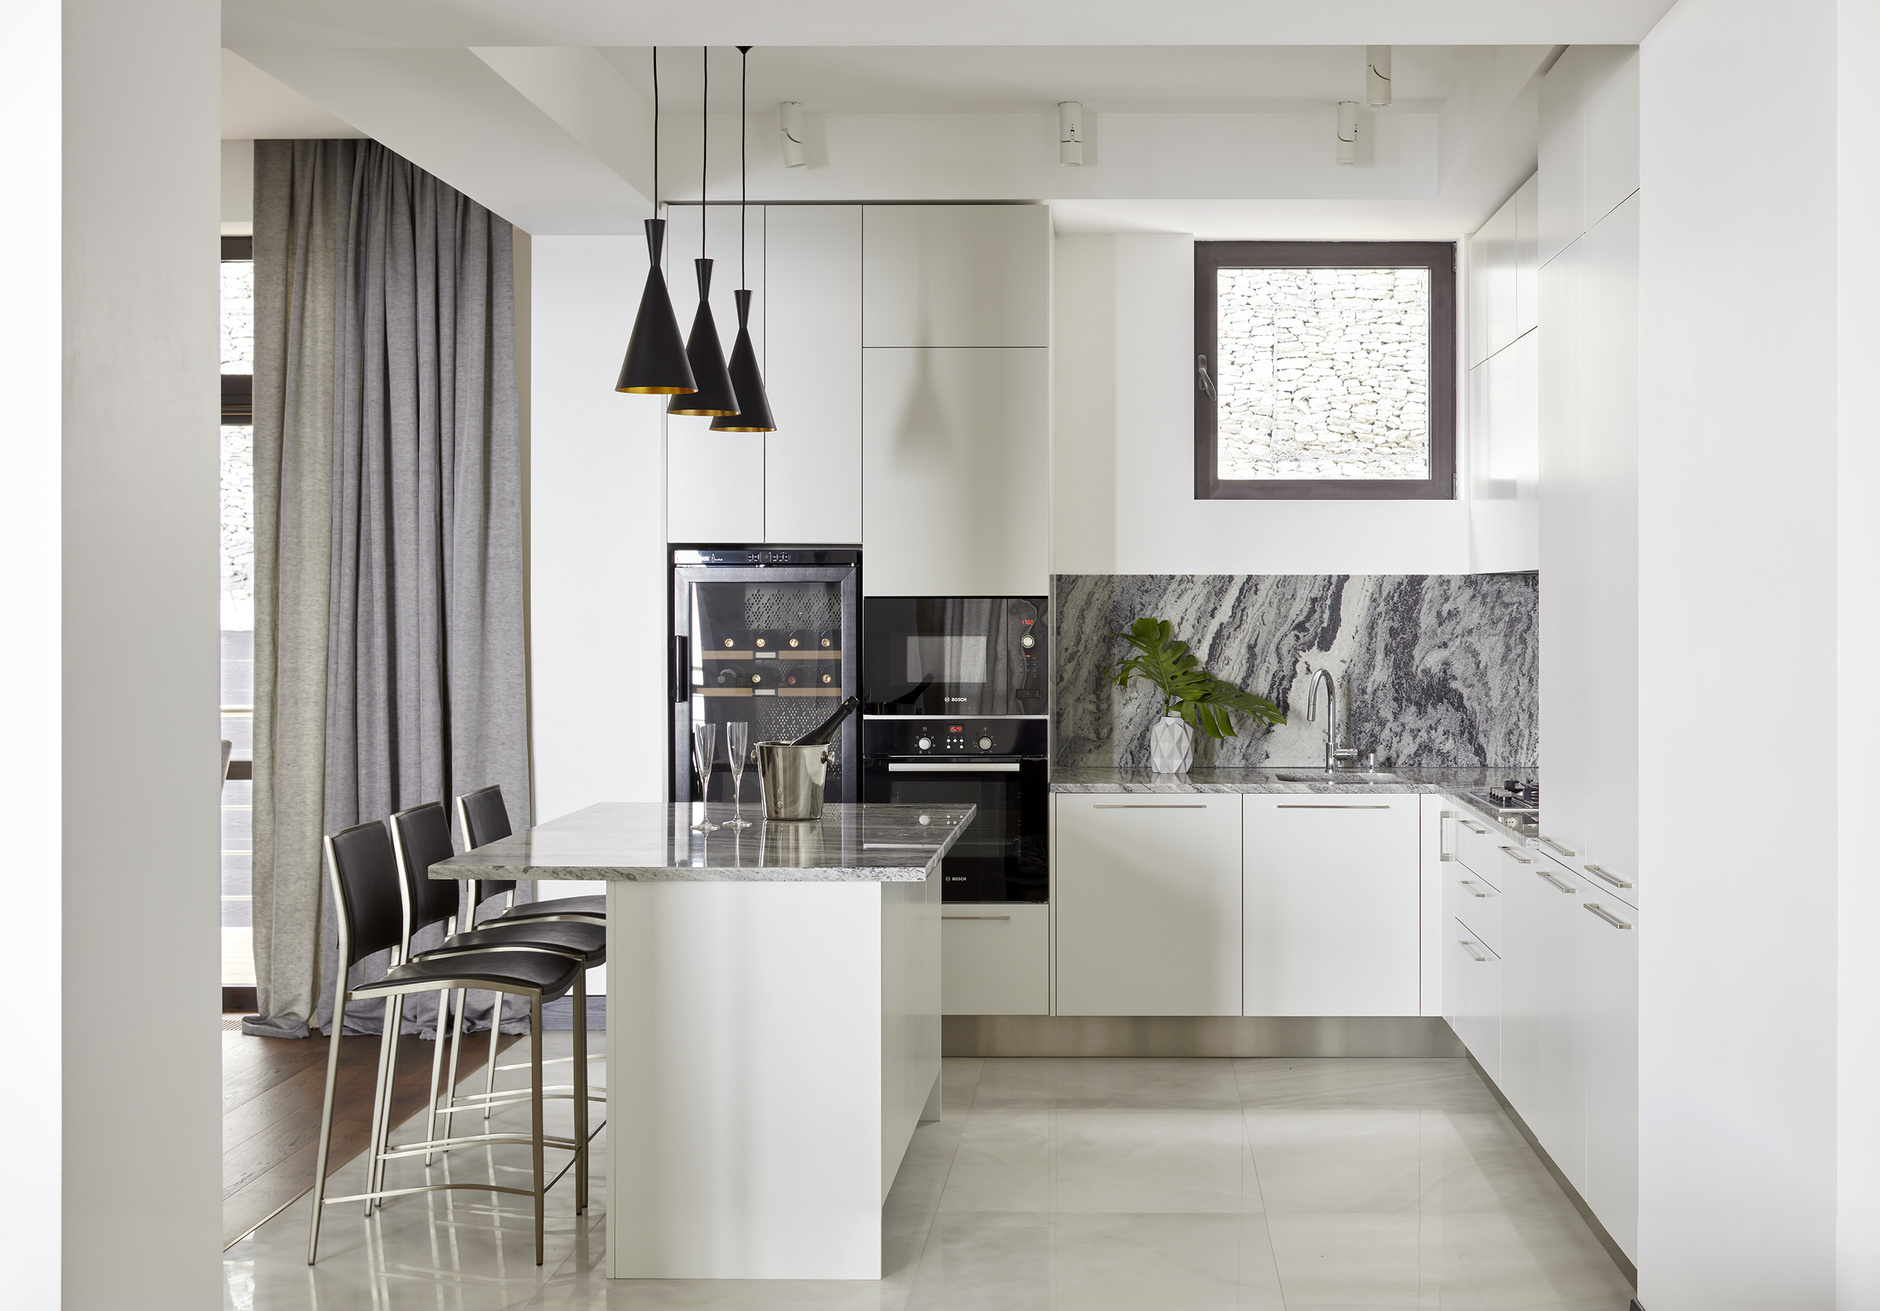 Dự án của nhà thiết kế Natalia Kühner với khu vực backsplash và toàn bộ mặt bàn bếp được ốp đá cẩm thạch vân xám sang trọng, tạo điểm nhấn cho không gian sử dụng gam màu trắng tươi sáng làm phông nền chủ đạo.